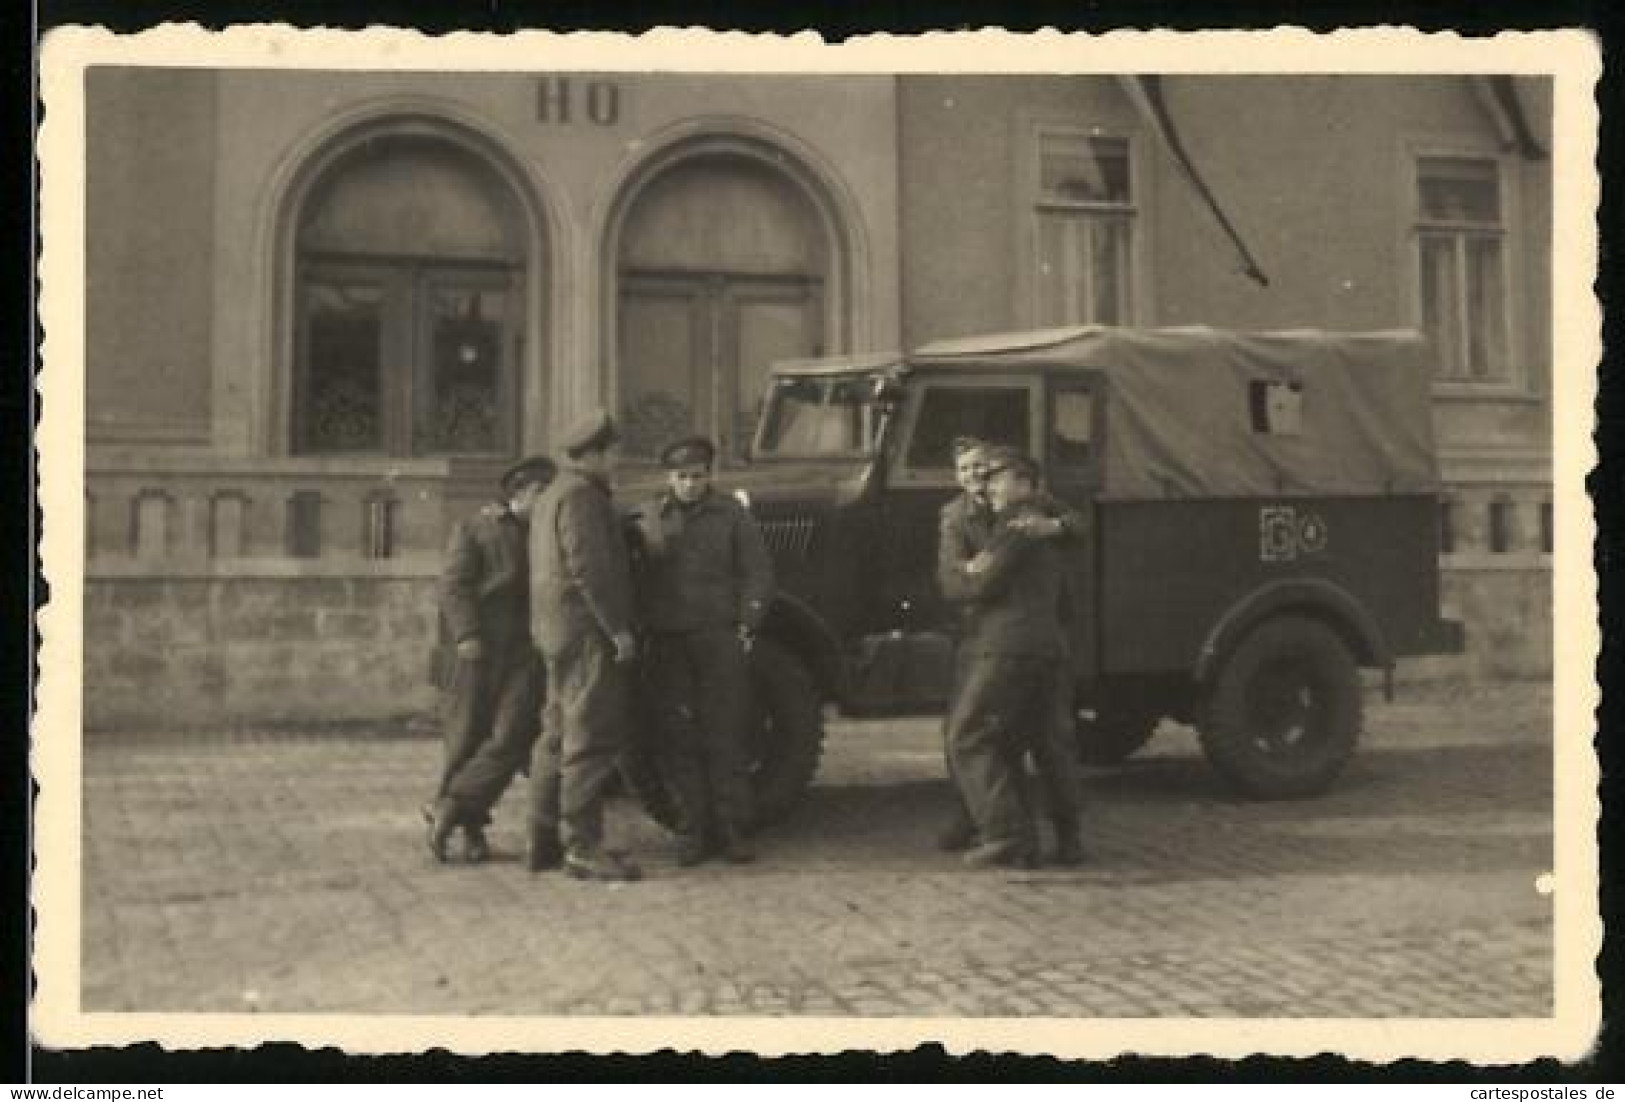 Fotografie DDR KVP-Kasernierte Volkspolizei, Geländewagen - Kübelwagen  - Krieg, Militär